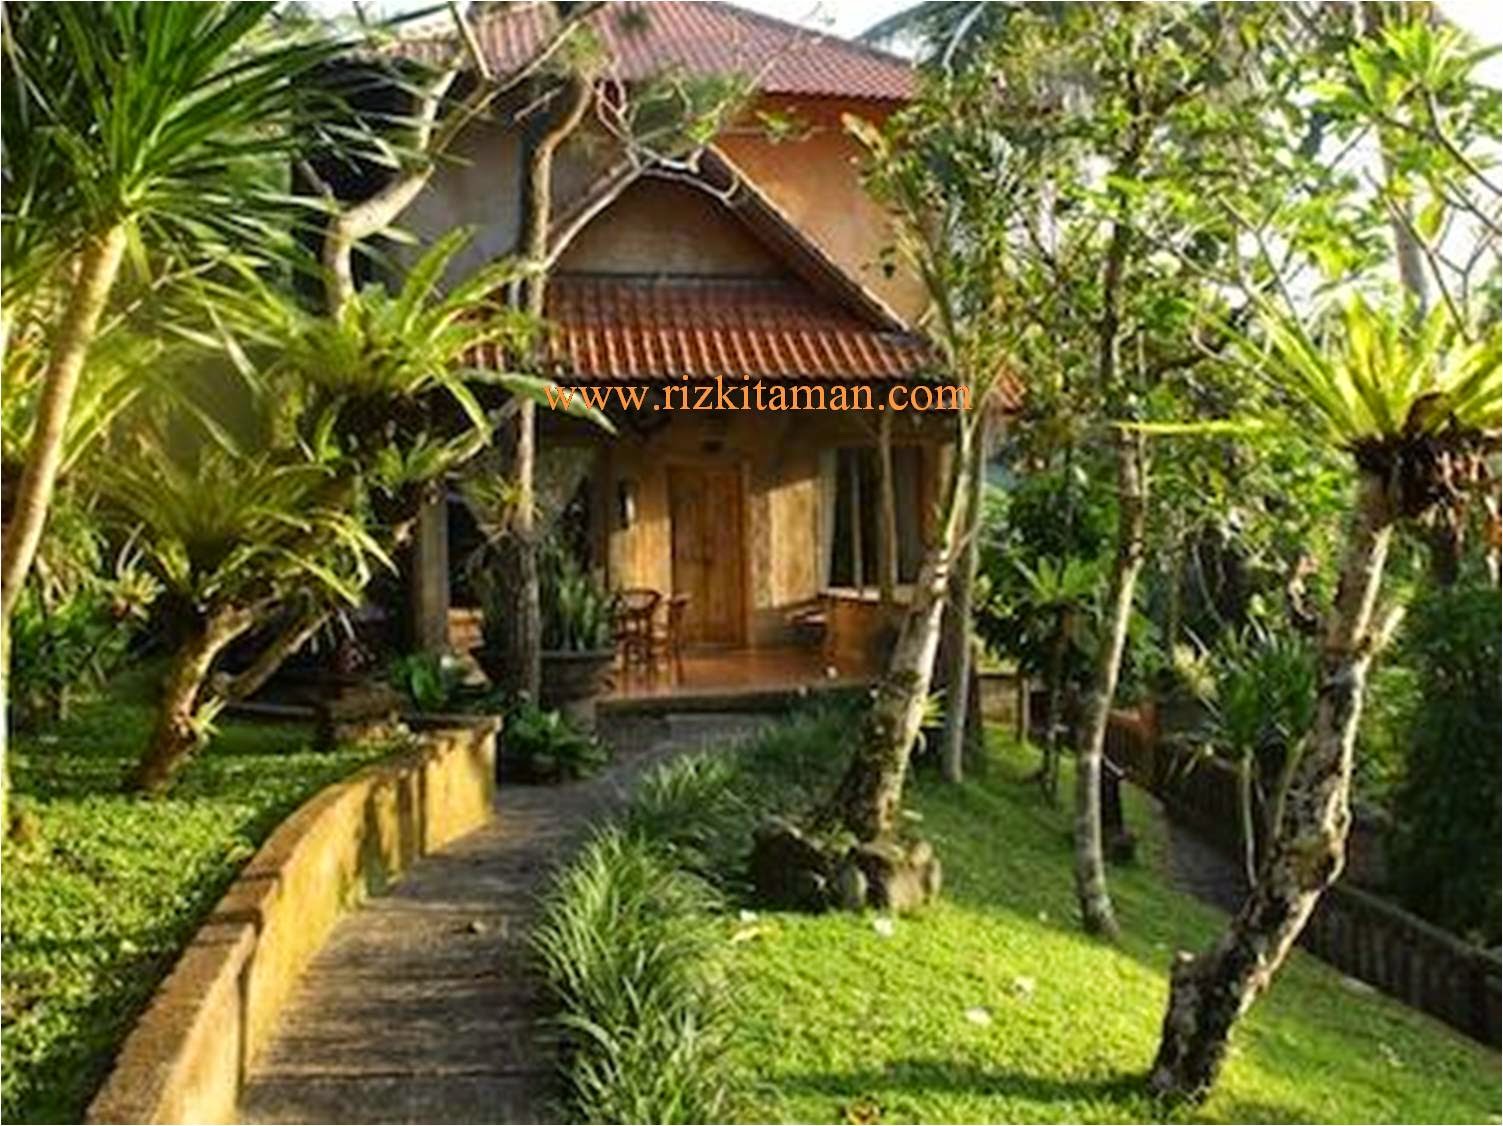 Desain Rumah  Minimalis  Gaya  Bali  30 Gambar  Desain Rumah  Adat Bali  Tradisional dan Modern 